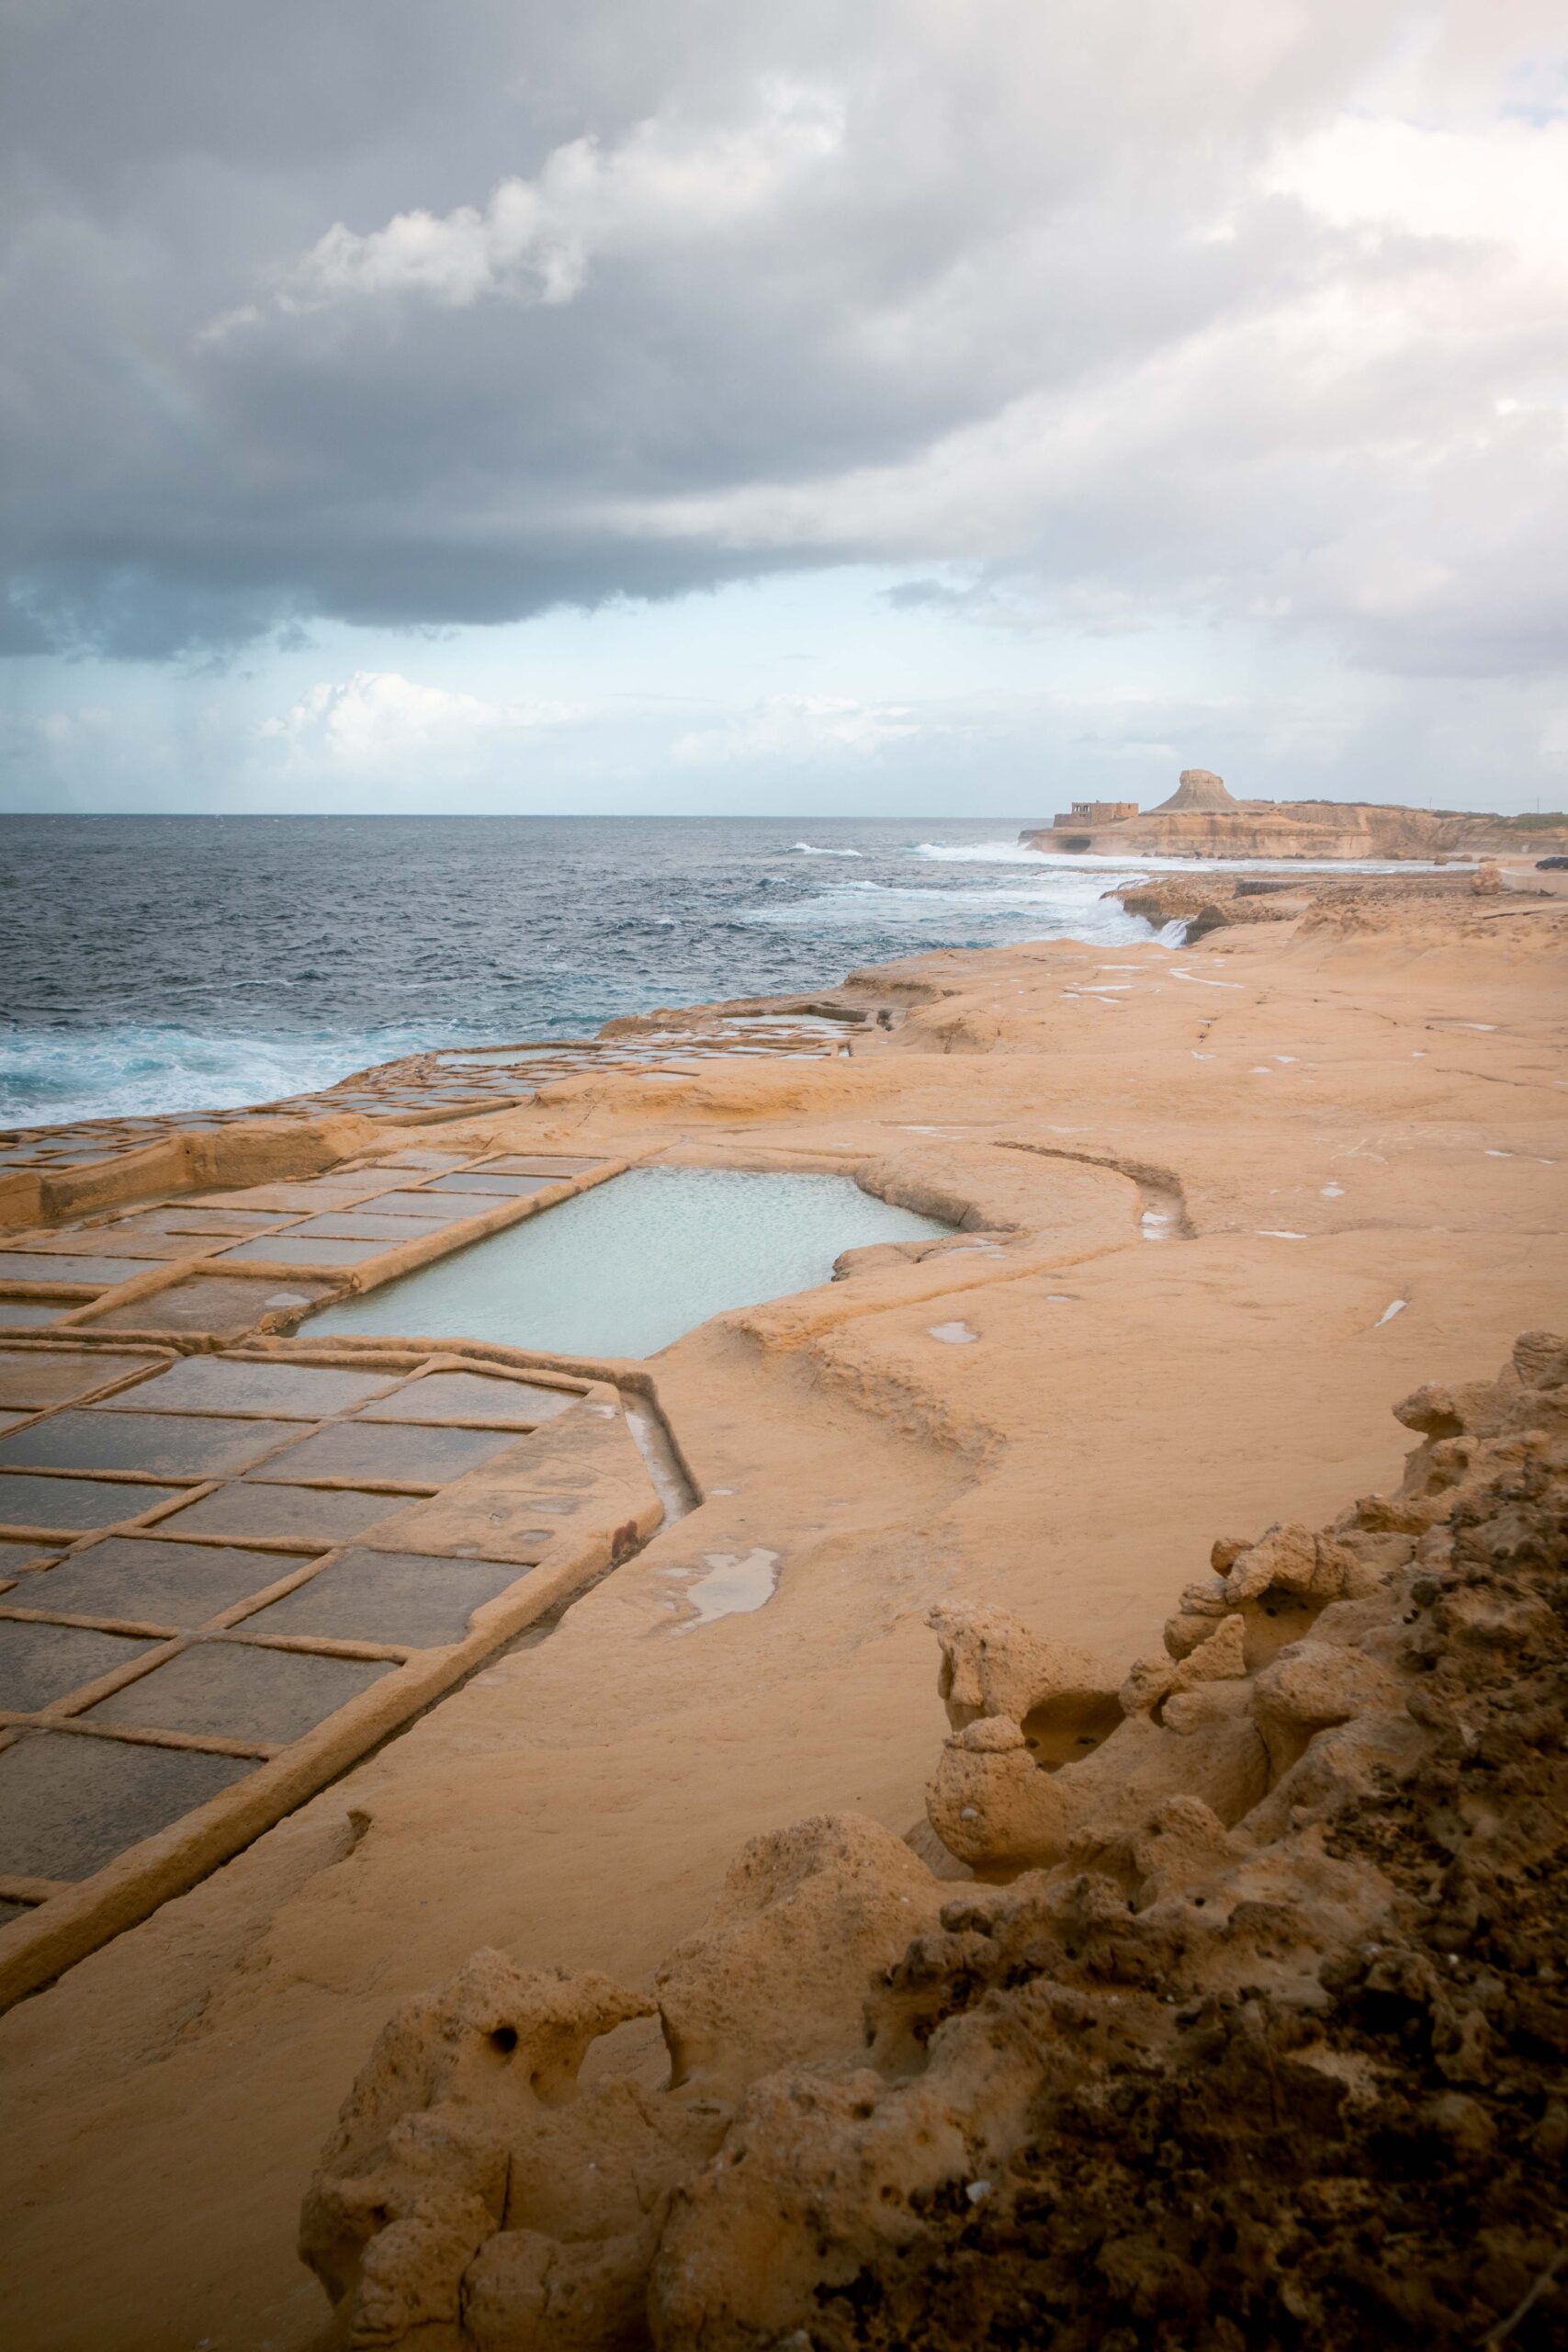 Agitated sea at Xwejni Salt Pans in Gozo island, Malta with a distant view of Xwejni Rock and Qolla l-Bajda